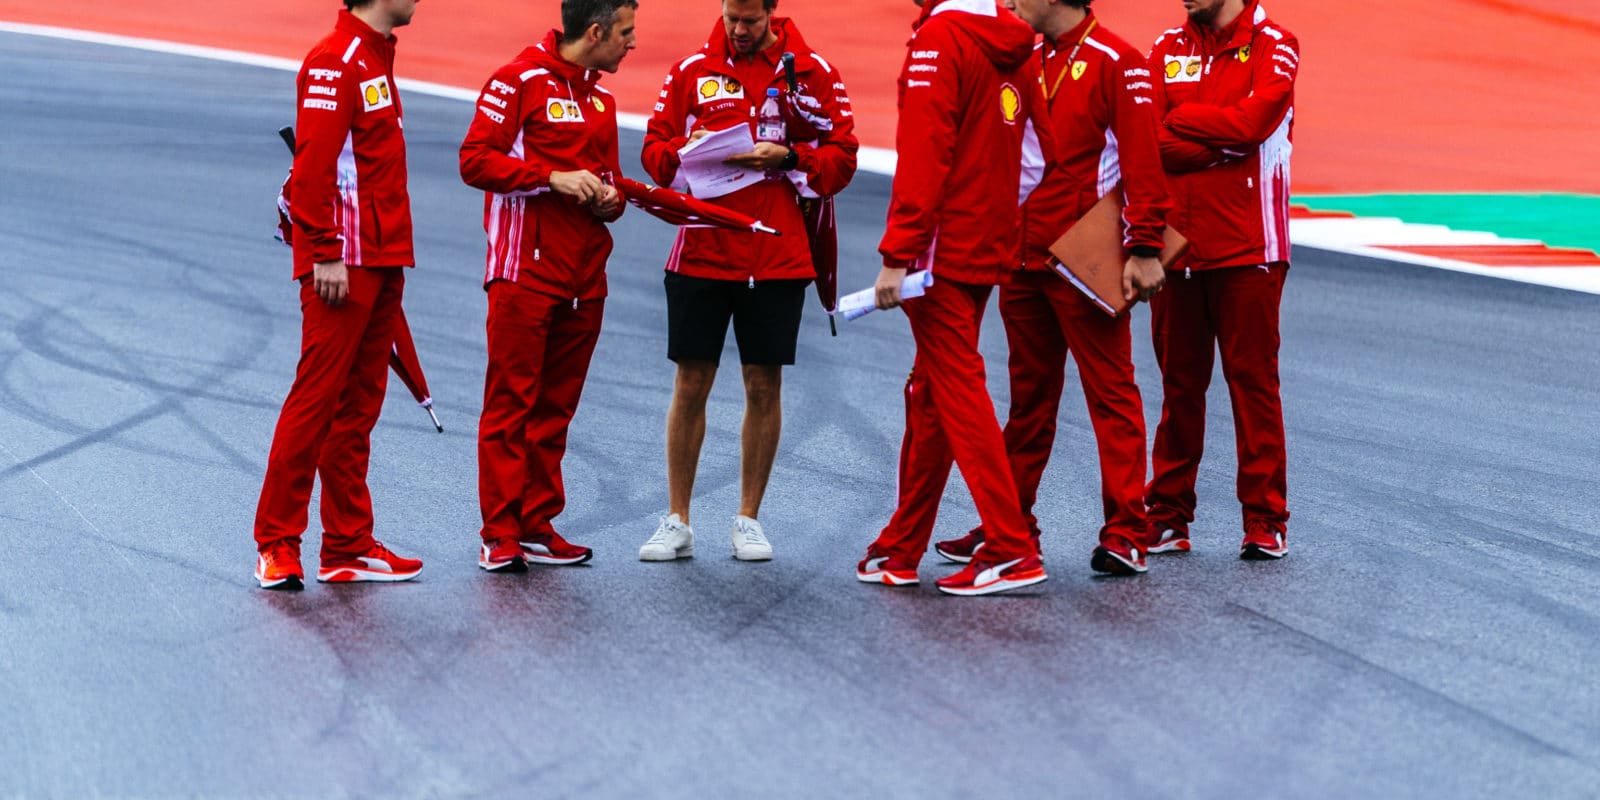 Situace u Ferrari nebyla pod Arrivabenem dobrá, říká Martin Brundle